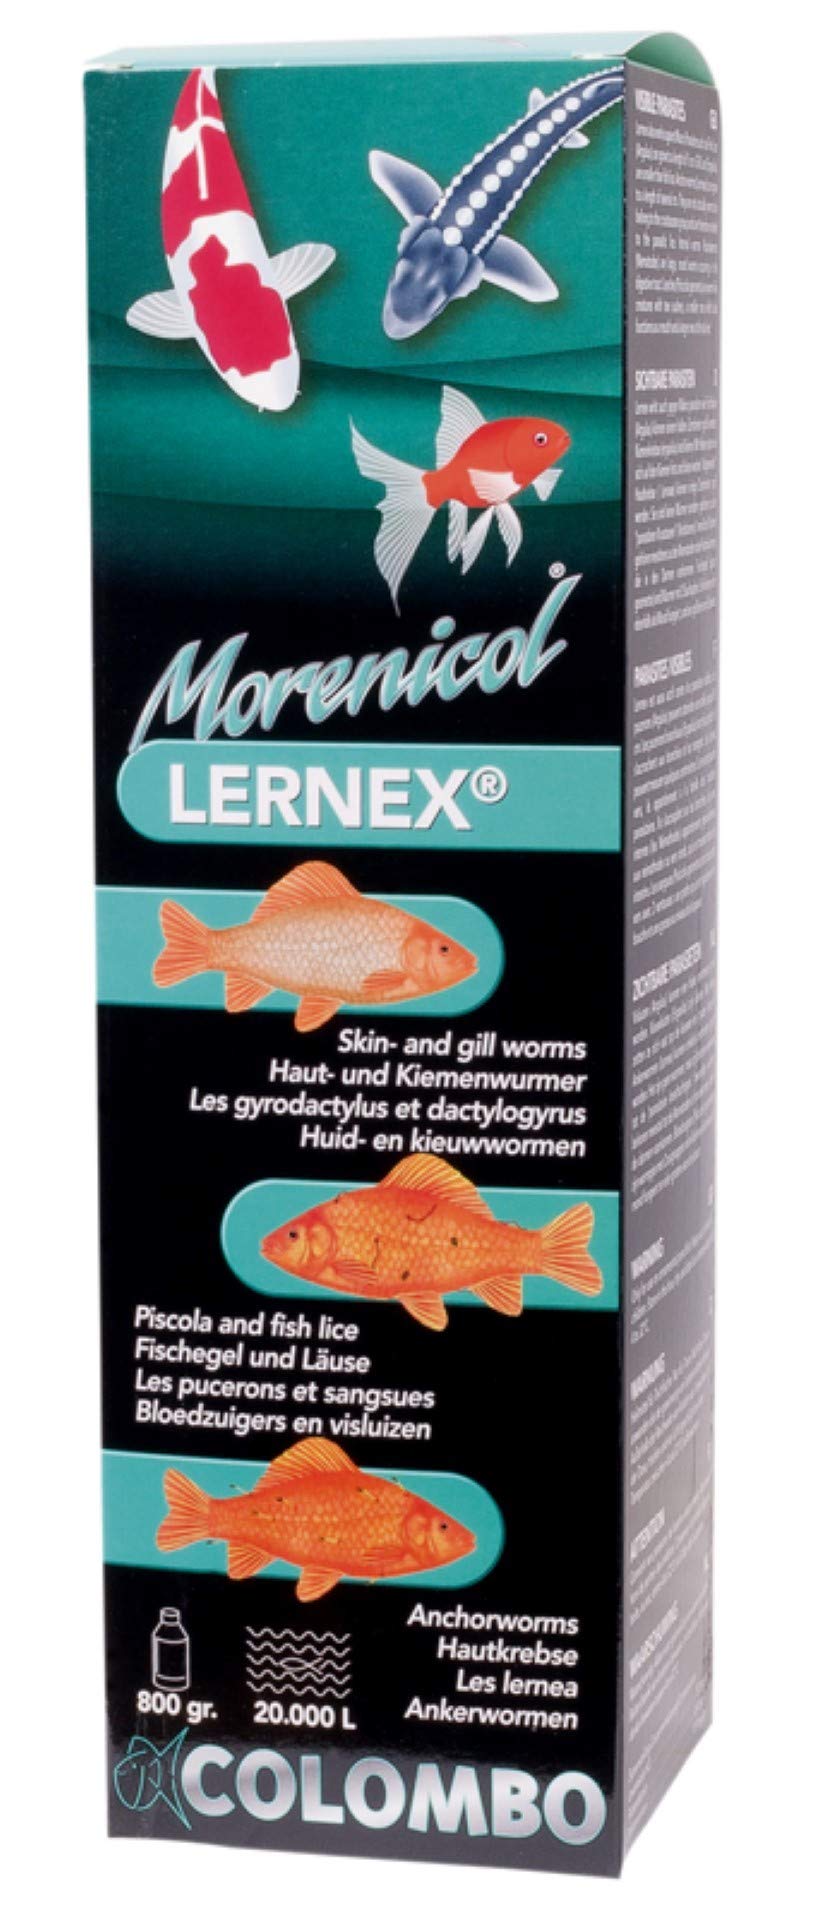 Koi Teichmedizin Colombo Morenicol Lernex - 200g für 5000 Ltr. Teichvolumen